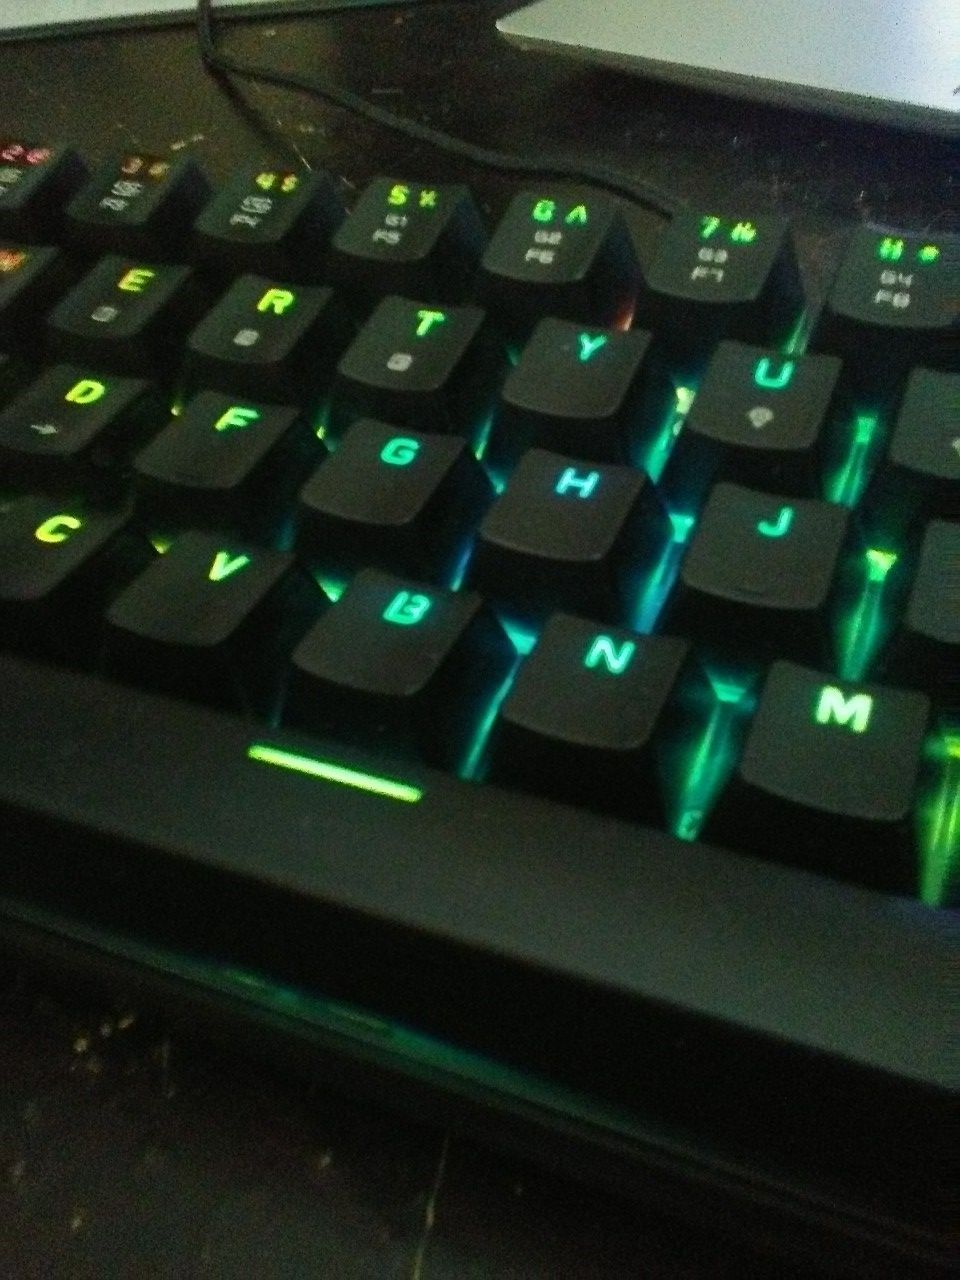 Motospeed CK62 Mechanical Gaming Keyboard